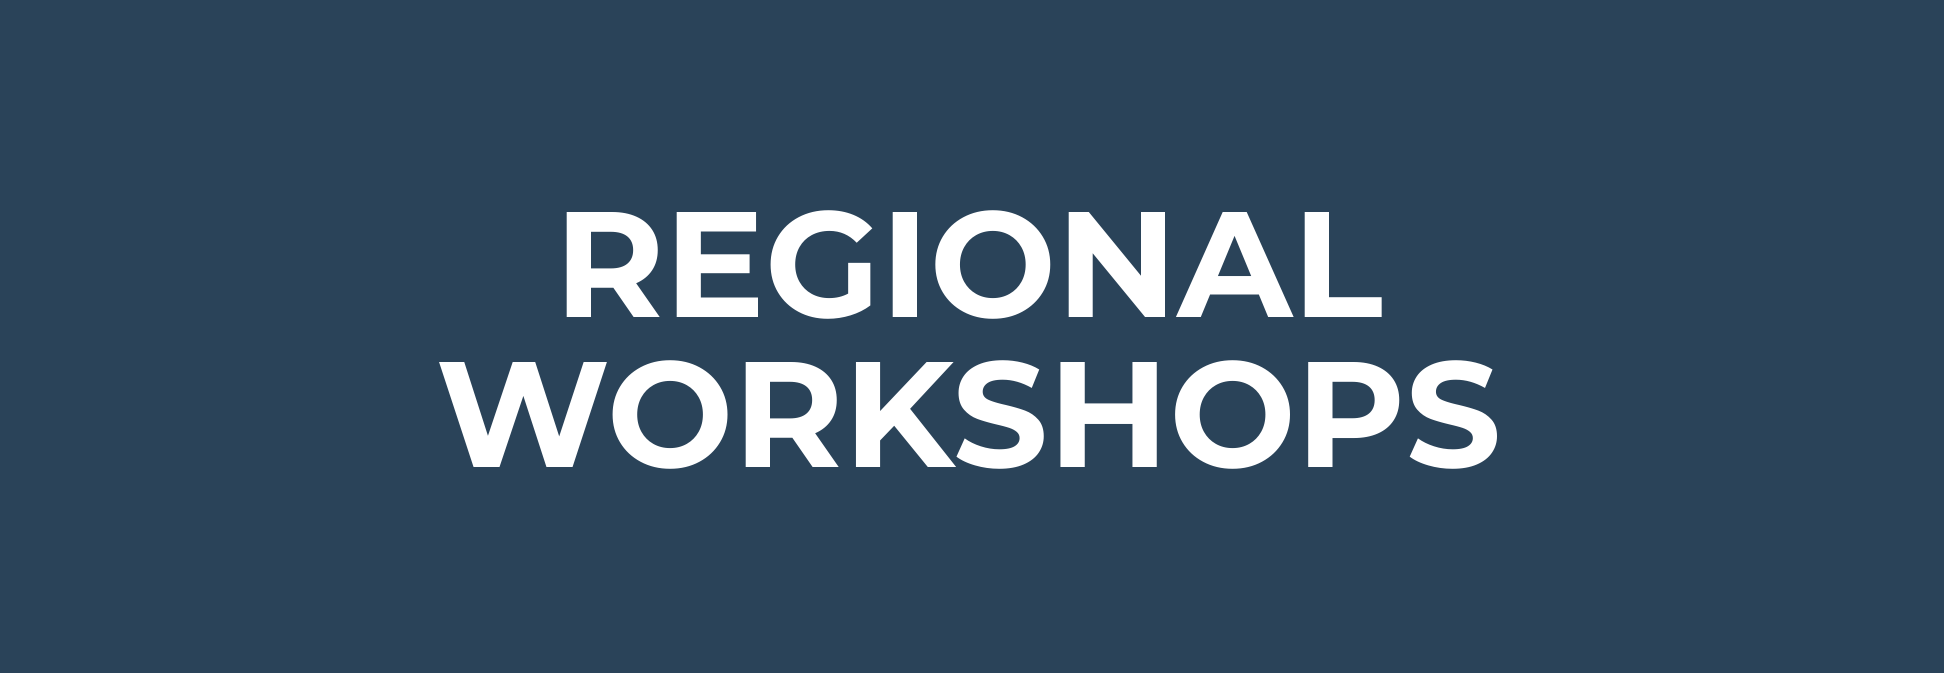 regional workshops